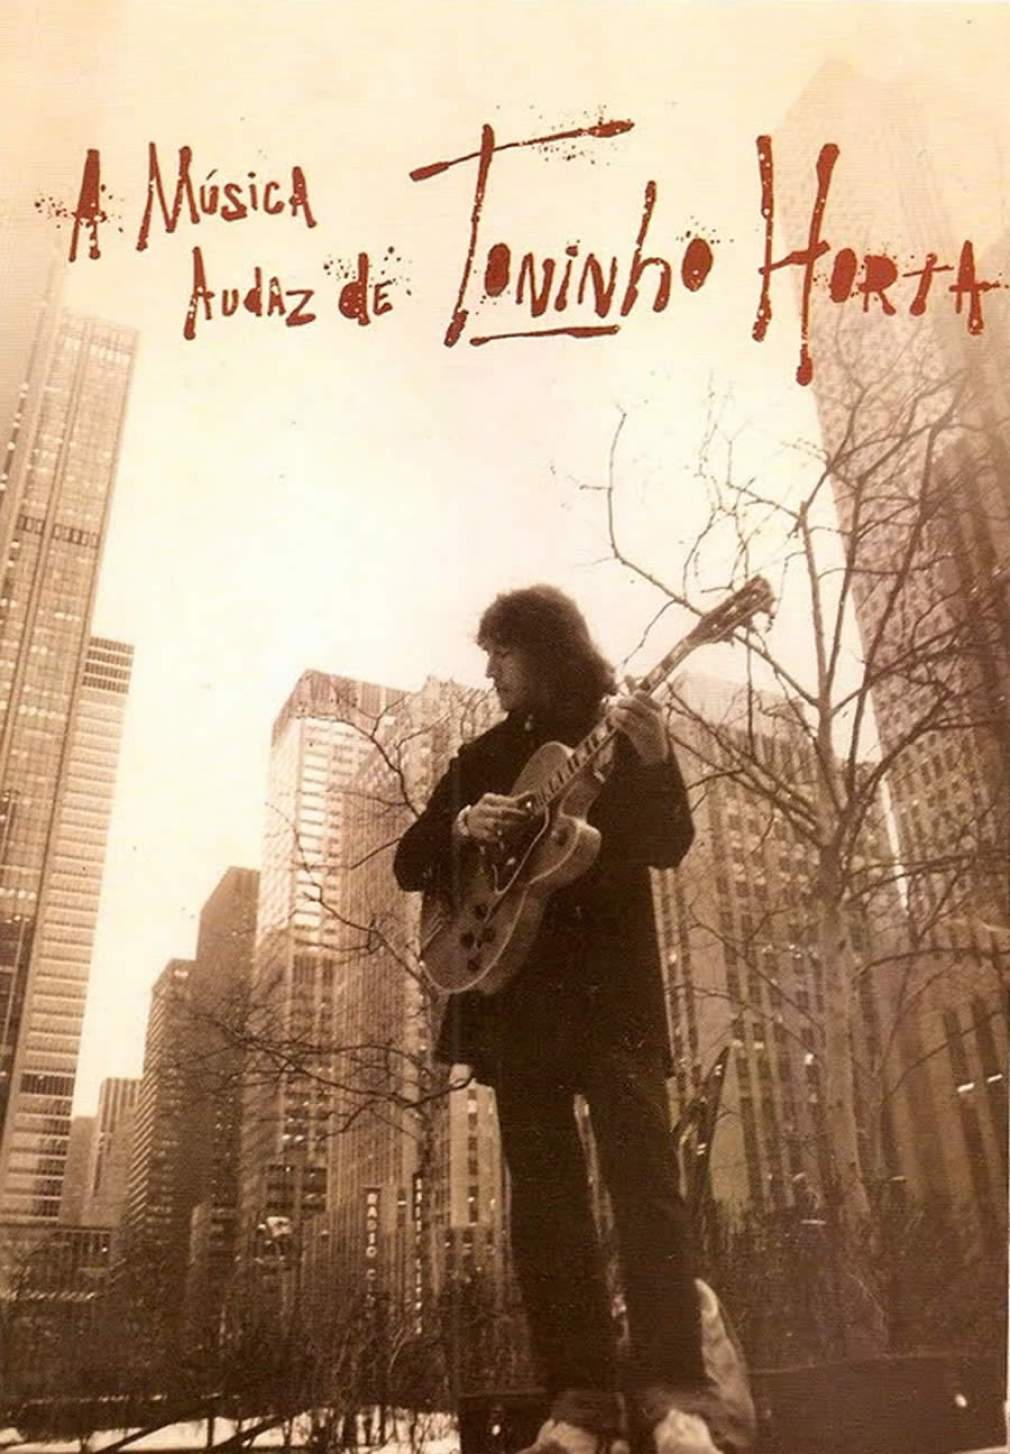 Confira no Looke a obra de Toninho Horta, ganhador do Grammy Latino de Melhor Álbum de Música Popular Brasileira